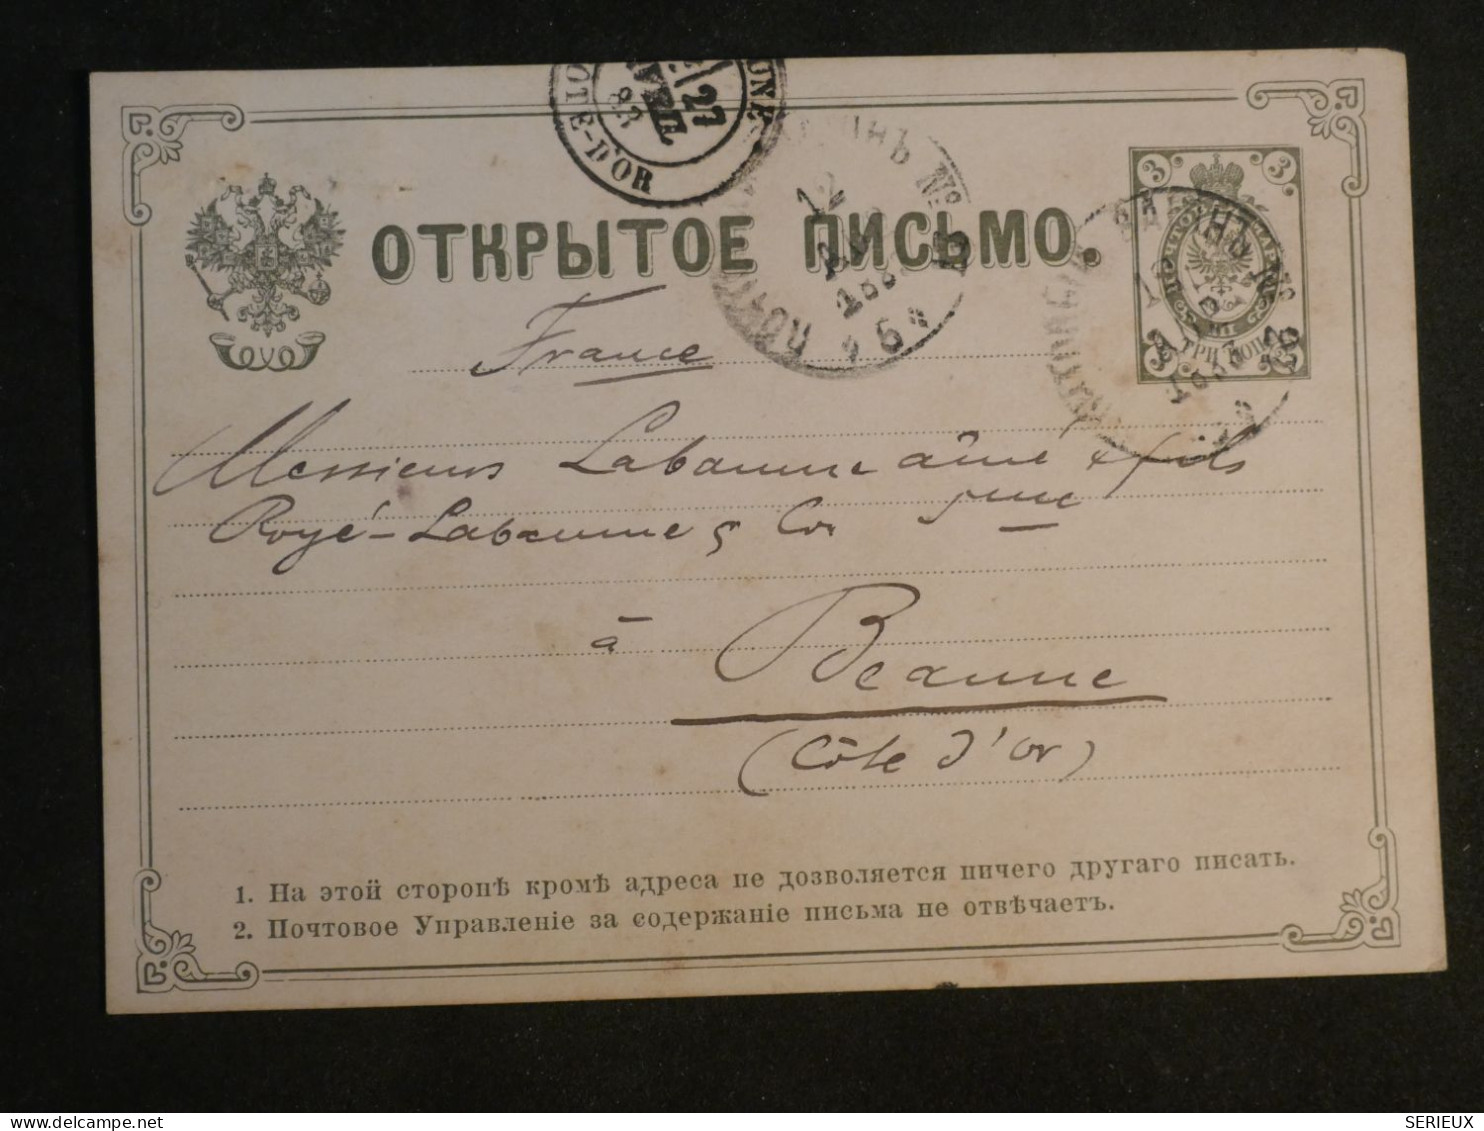 DG6b  BULGARIE  BELLE   CARTE ENTIER  1883 A BEAUNE   FRANCE + AFF. INTERESSANT - Cartes Postales